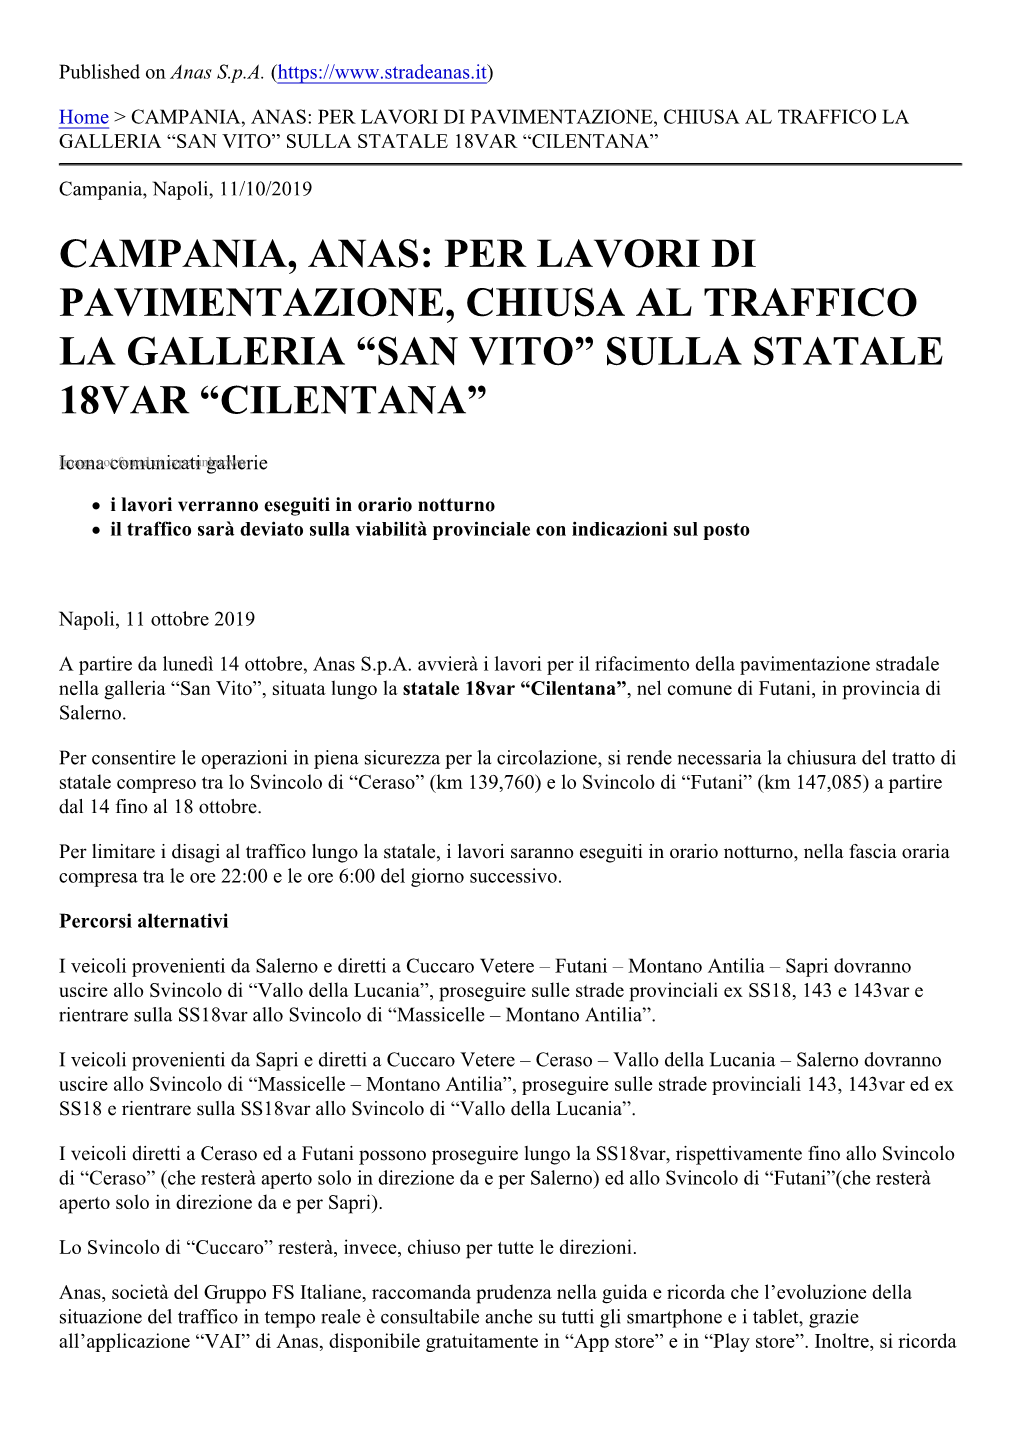 Campania, Anas: Per Lavori Di Pavimentazione, Chiusa Al Traffico La Galleria “San Vito” Sulla Statale 18Var “Cilentana”